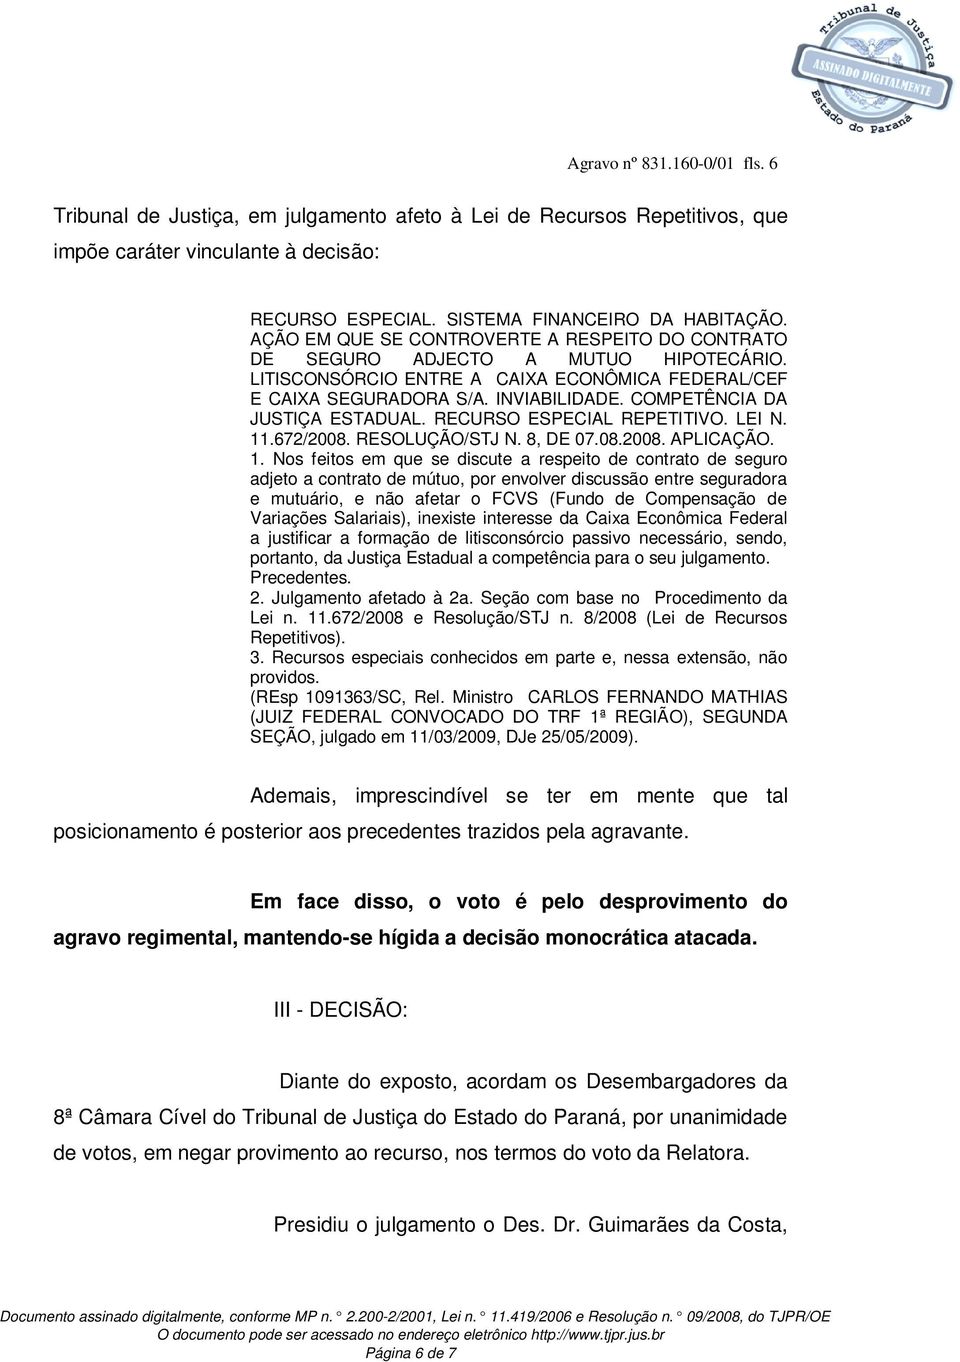 COMPETÊNCIA DA JUSTIÇA ESTADUAL. RECURSO ESPECIAL REPETITIVO. LEI N. 11